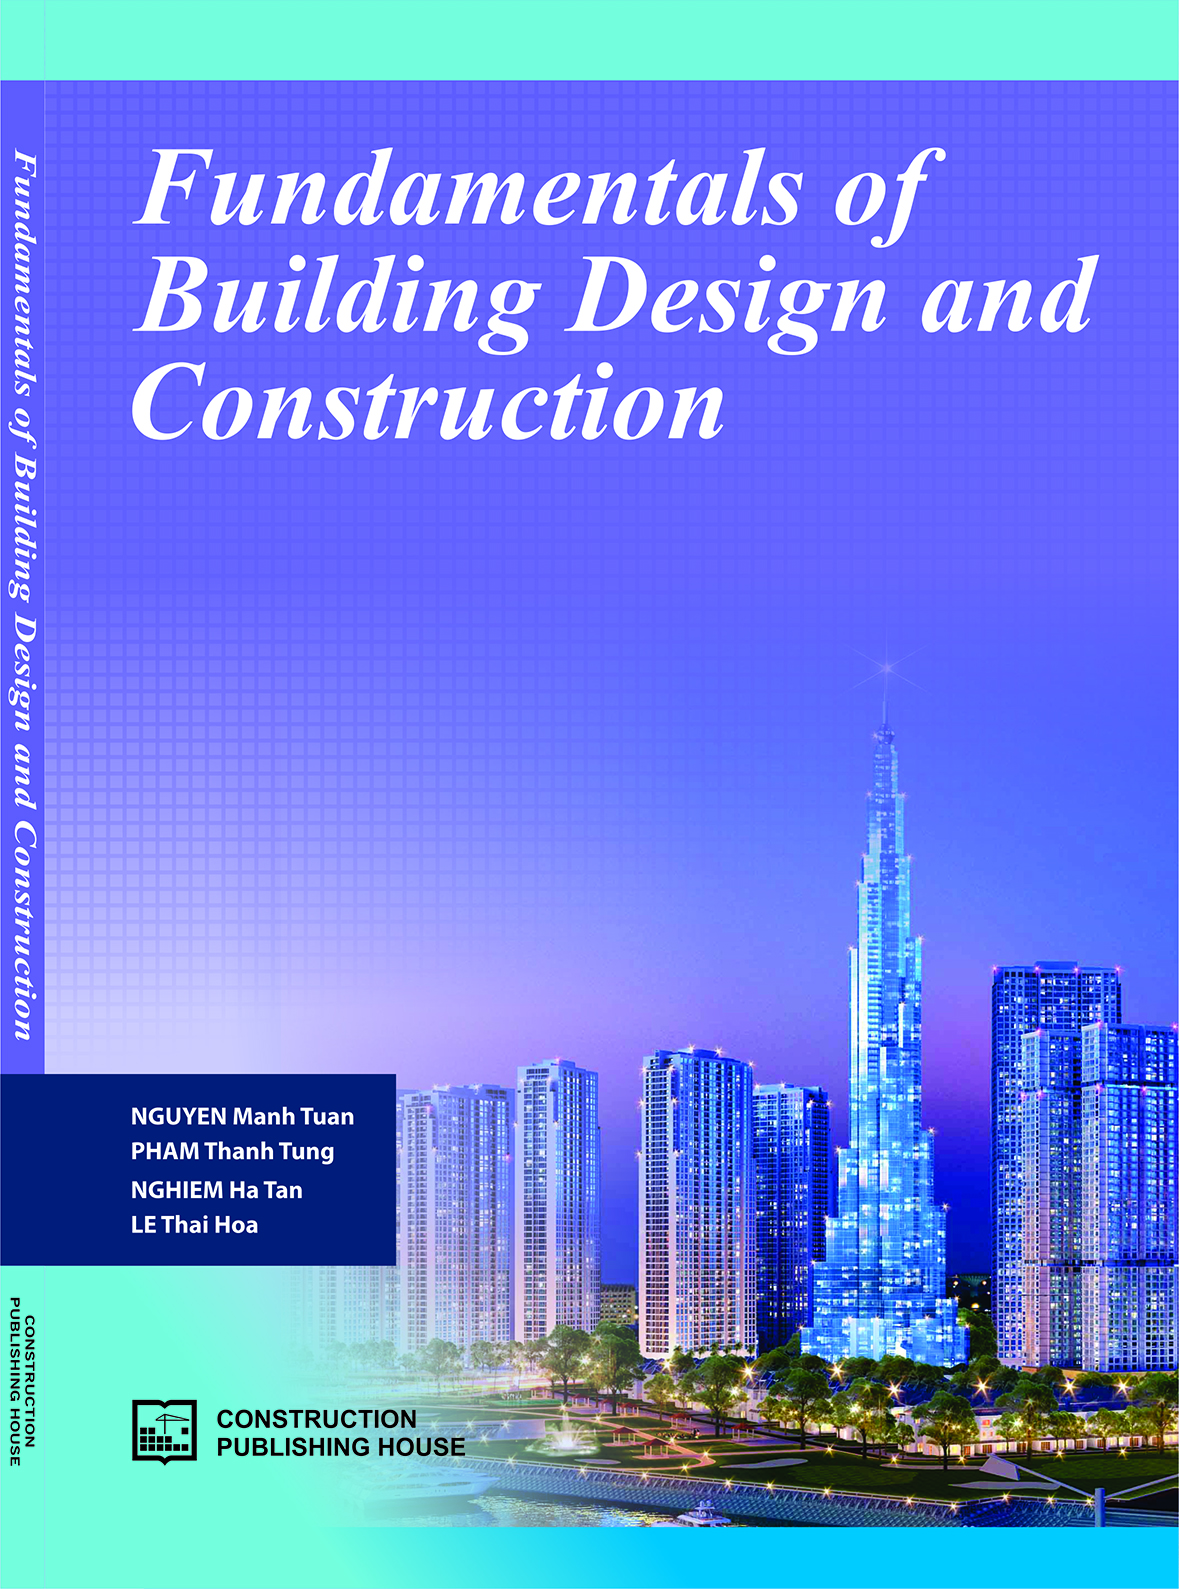 Fundamentals of building design and construction - Nguyên lý cơ bản trong thiết kế và thi công xây dựng dân dụng)